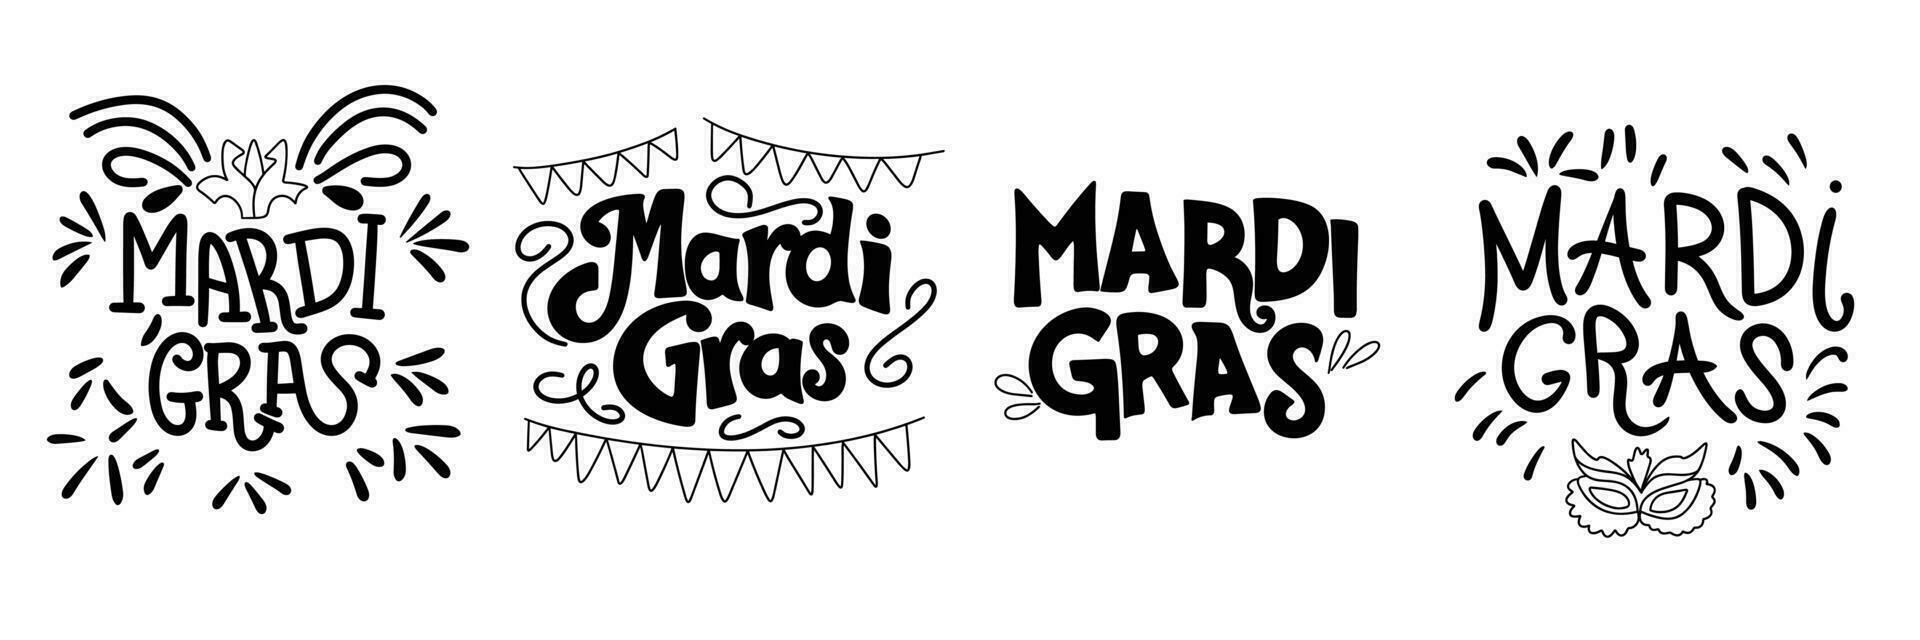 verzameling van mardi gras inscripties. handschrift zwart tekst banners sets mardi gras concept. hand- getrokken vector kunst.